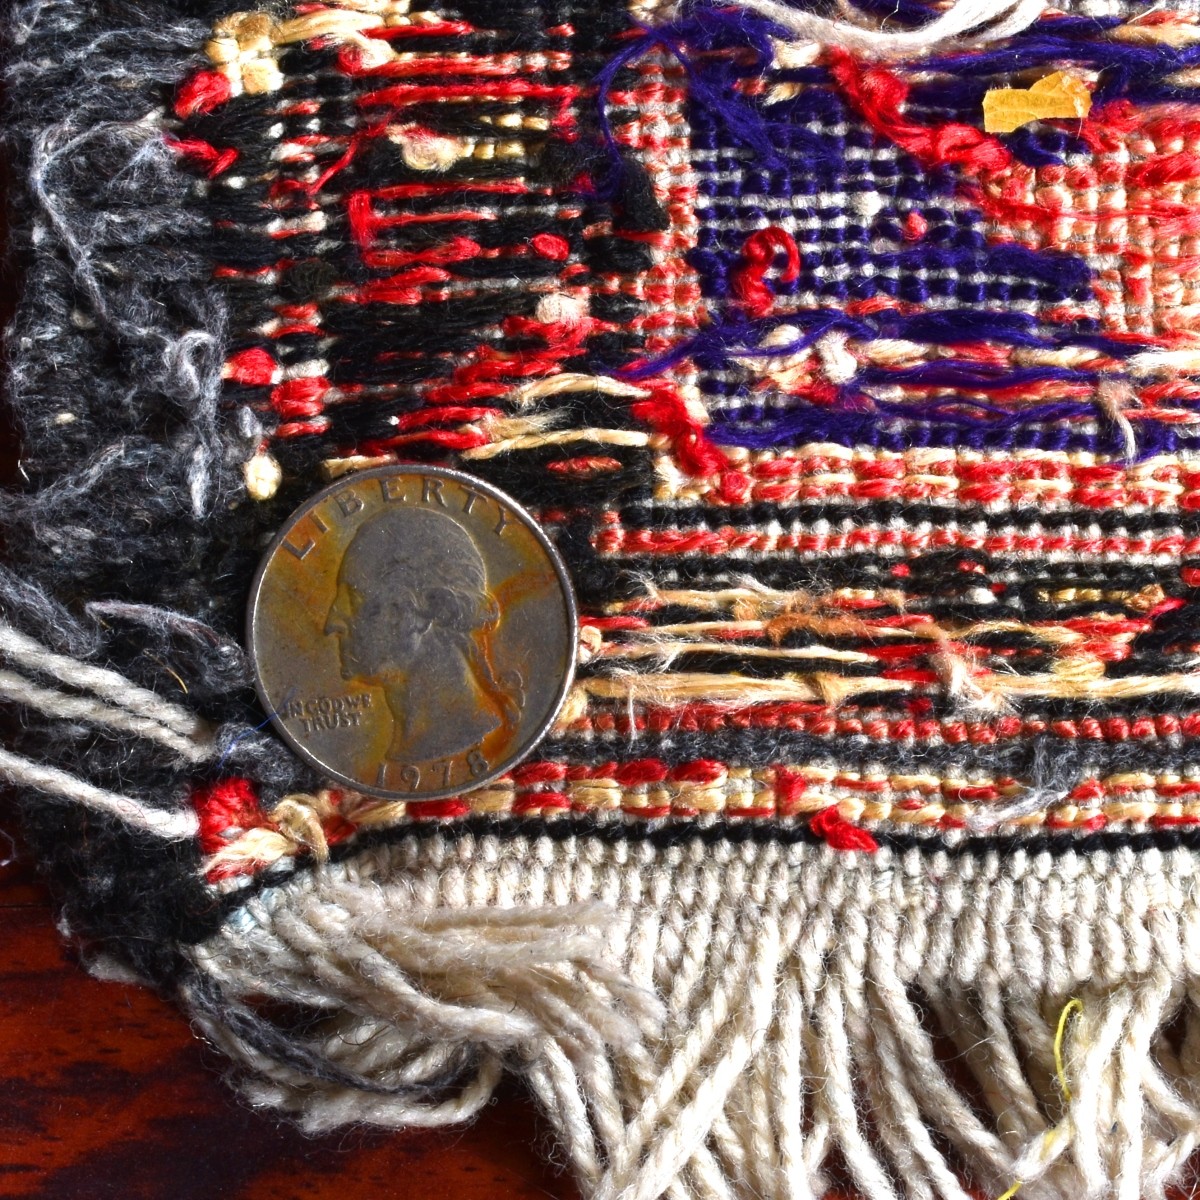 Two Afghan Tribal Rugs